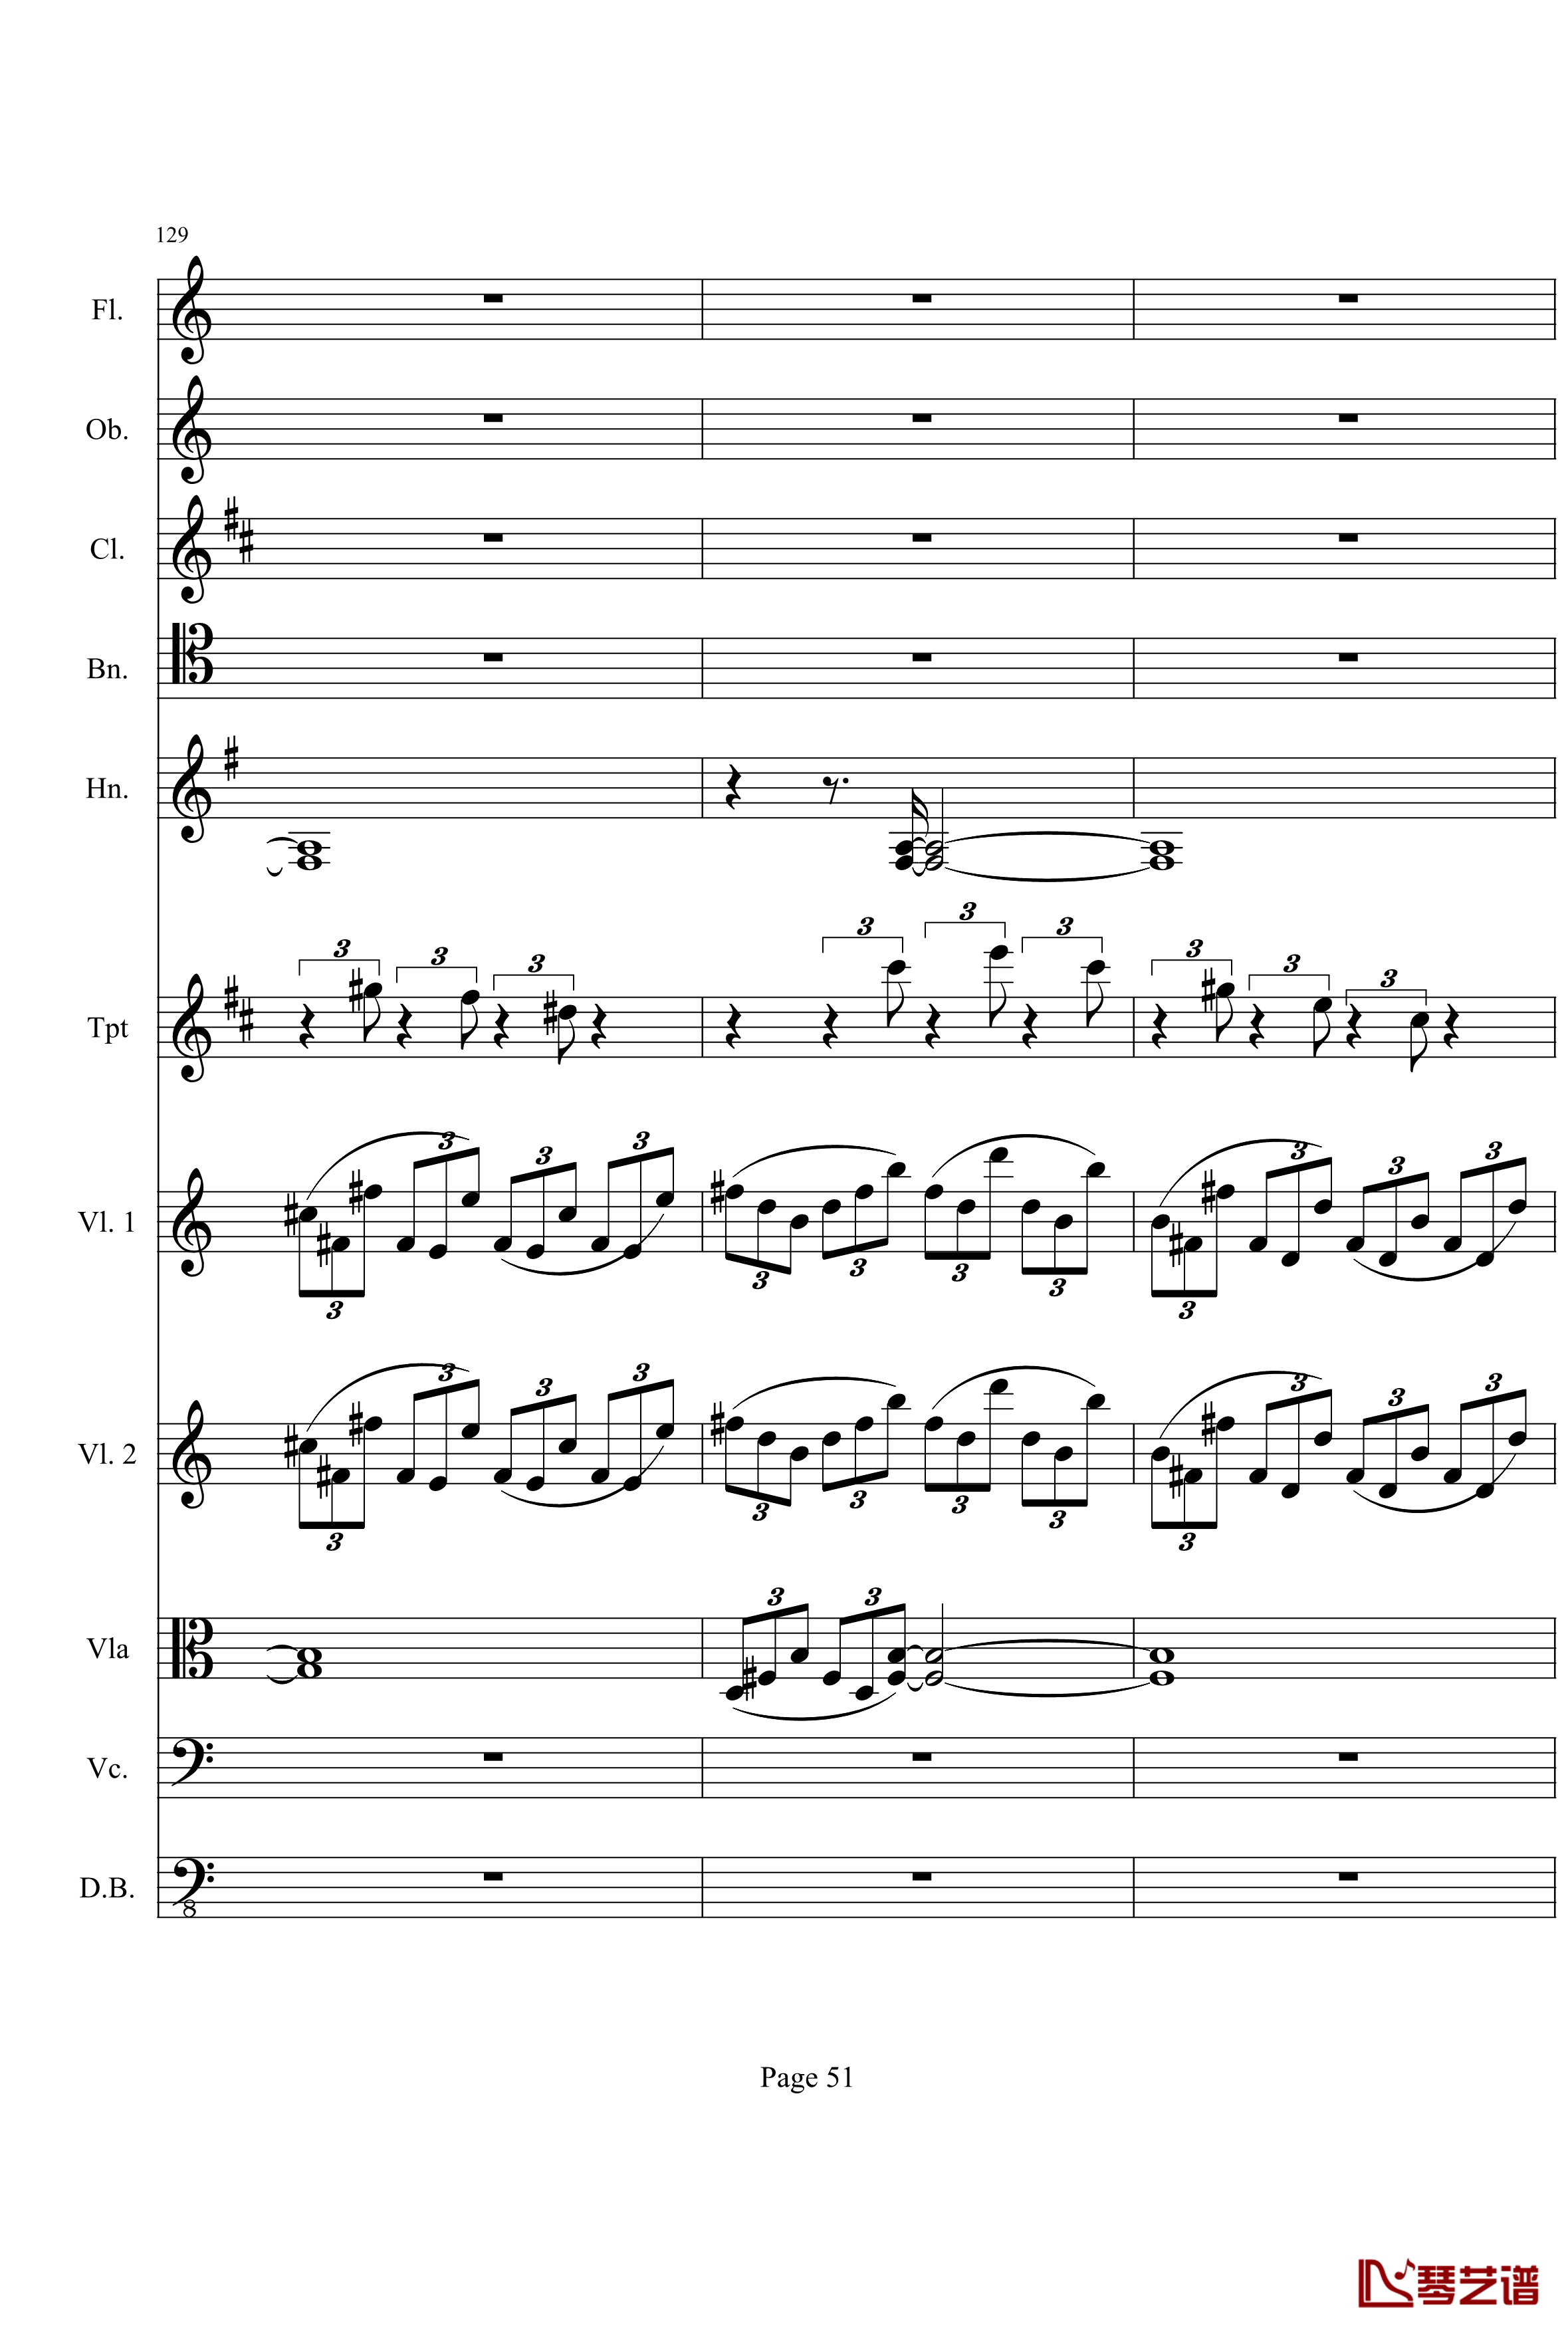 奏鸣曲之交响钢琴谱-第21-Ⅰ-贝多芬-beethoven51